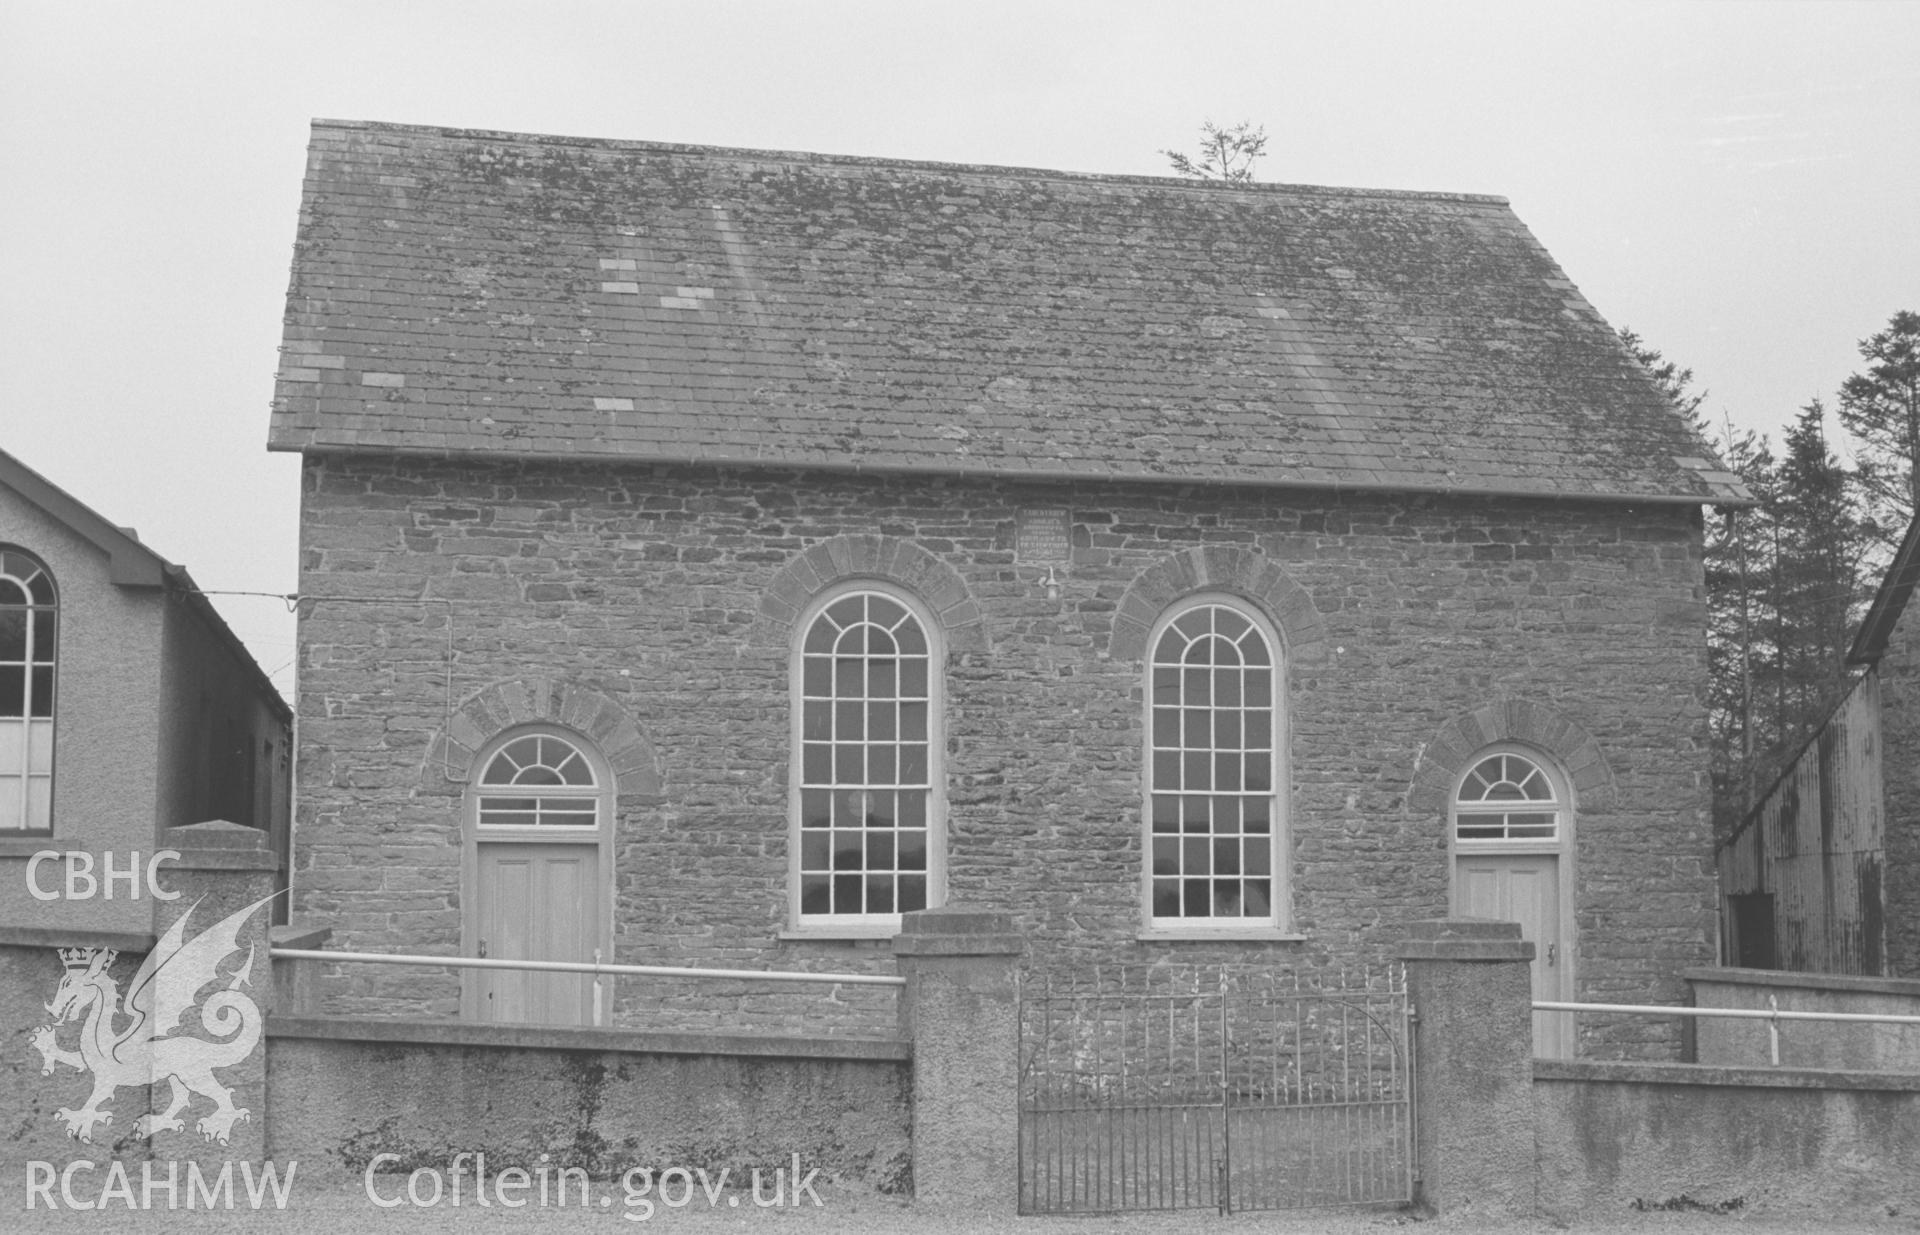 Digital copy of black & white negative of Troed-y-Rhiw Welsh Independent Chapel, Cribyn. Inscription: 'TROEDYRHIW ADDOLDY'R ANNIBYNWYR YR HWN A ADEILADWYD YN Y FLWYDDYN 1861' Photograph by Arthur Chater, April 1964 from SN50015219, looking west south west.